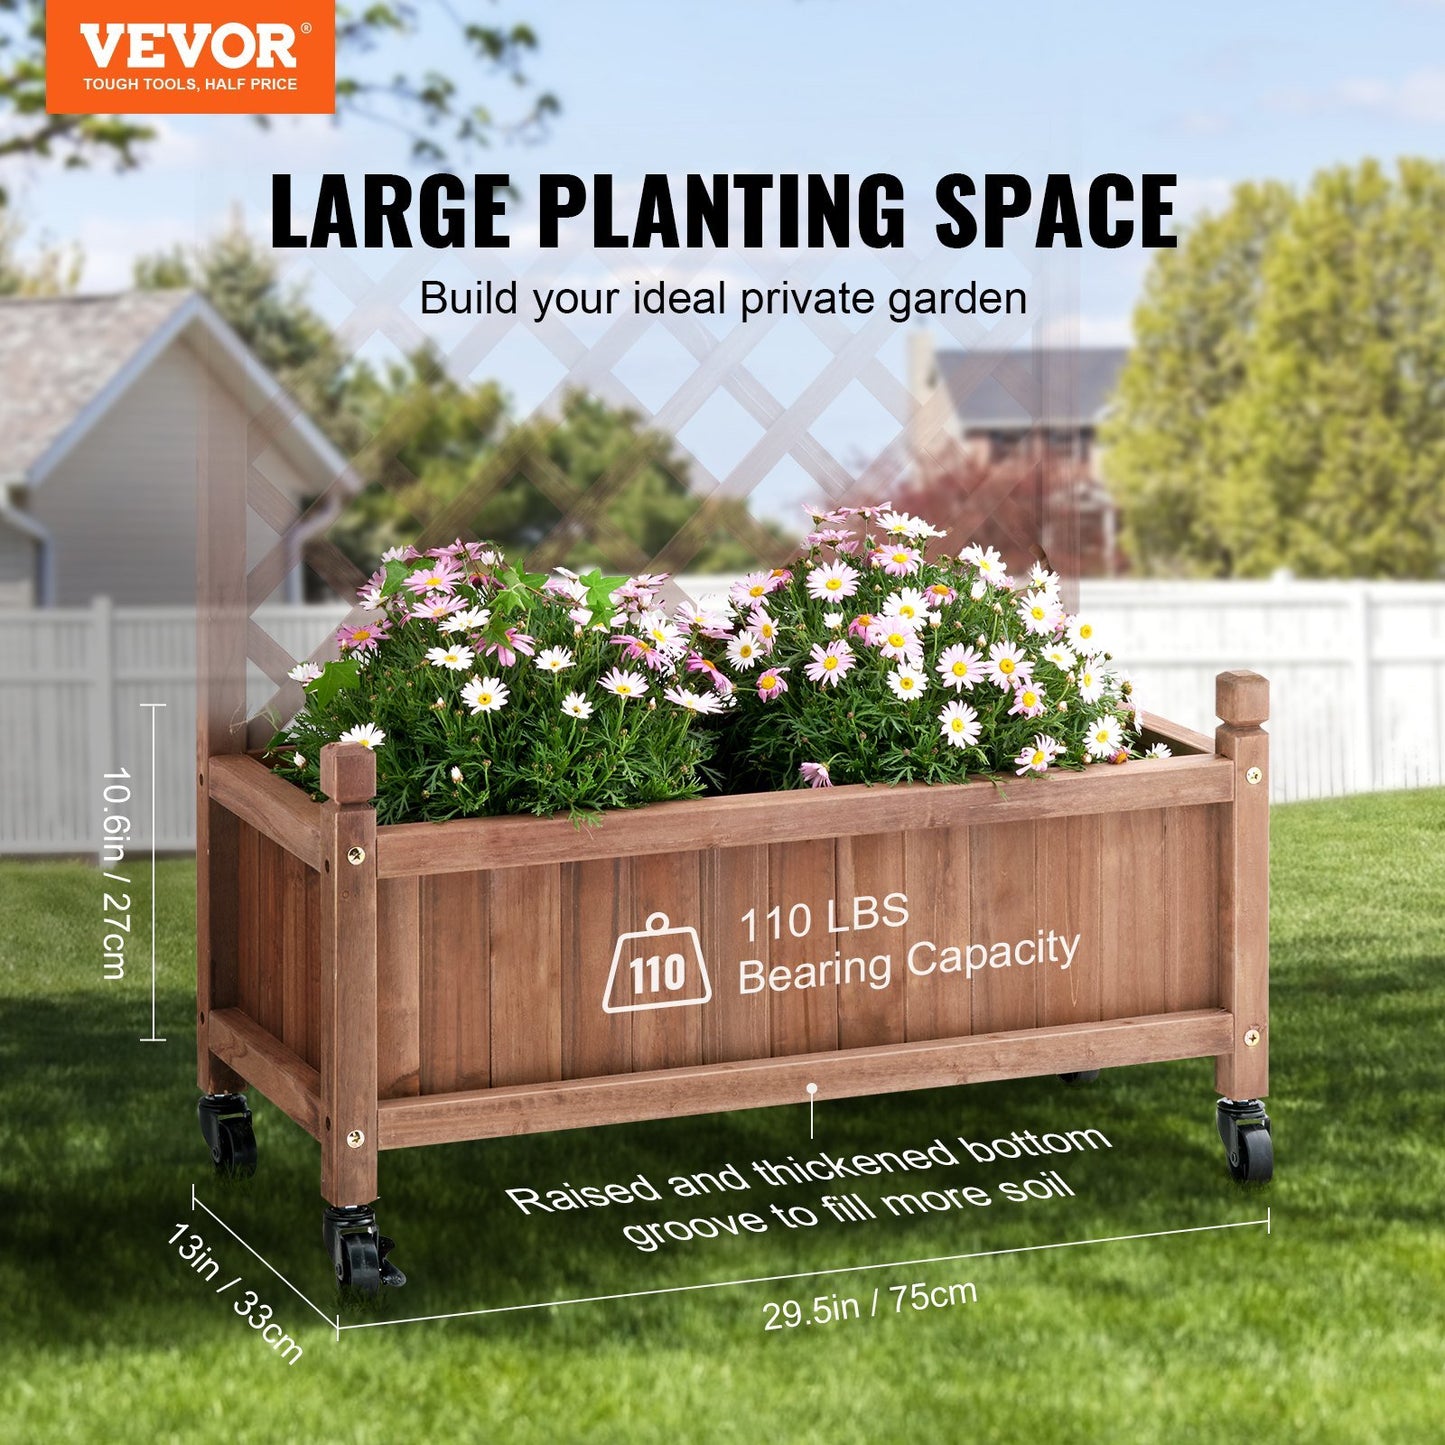 VEVOR Free-Standing Trellis Planter Box for Vine Climbing Plants Flowers in Garden